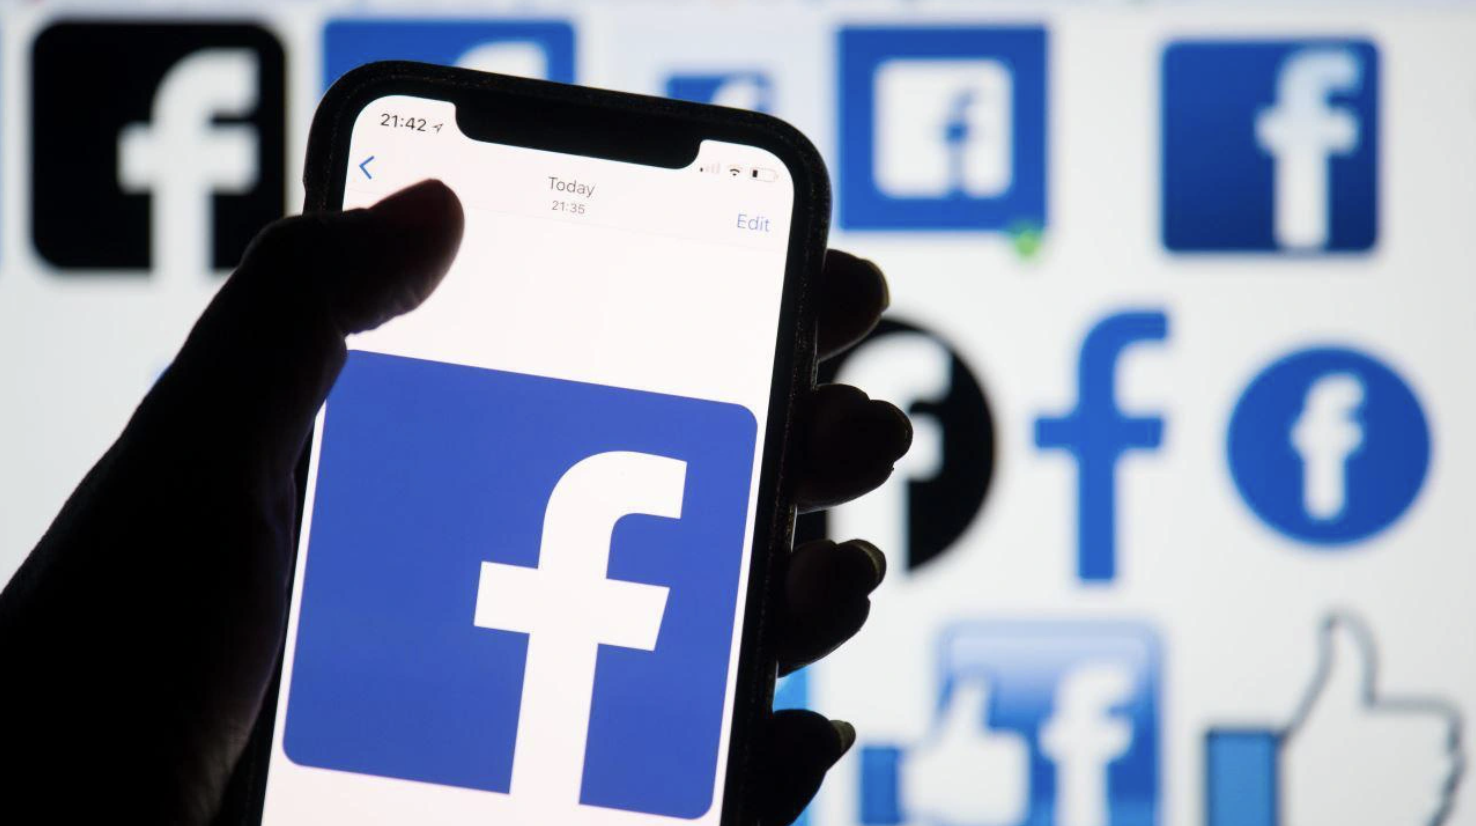 Facebook liên tục thay đổi, hướng đi ổn định nào cho người kinh doanh online?